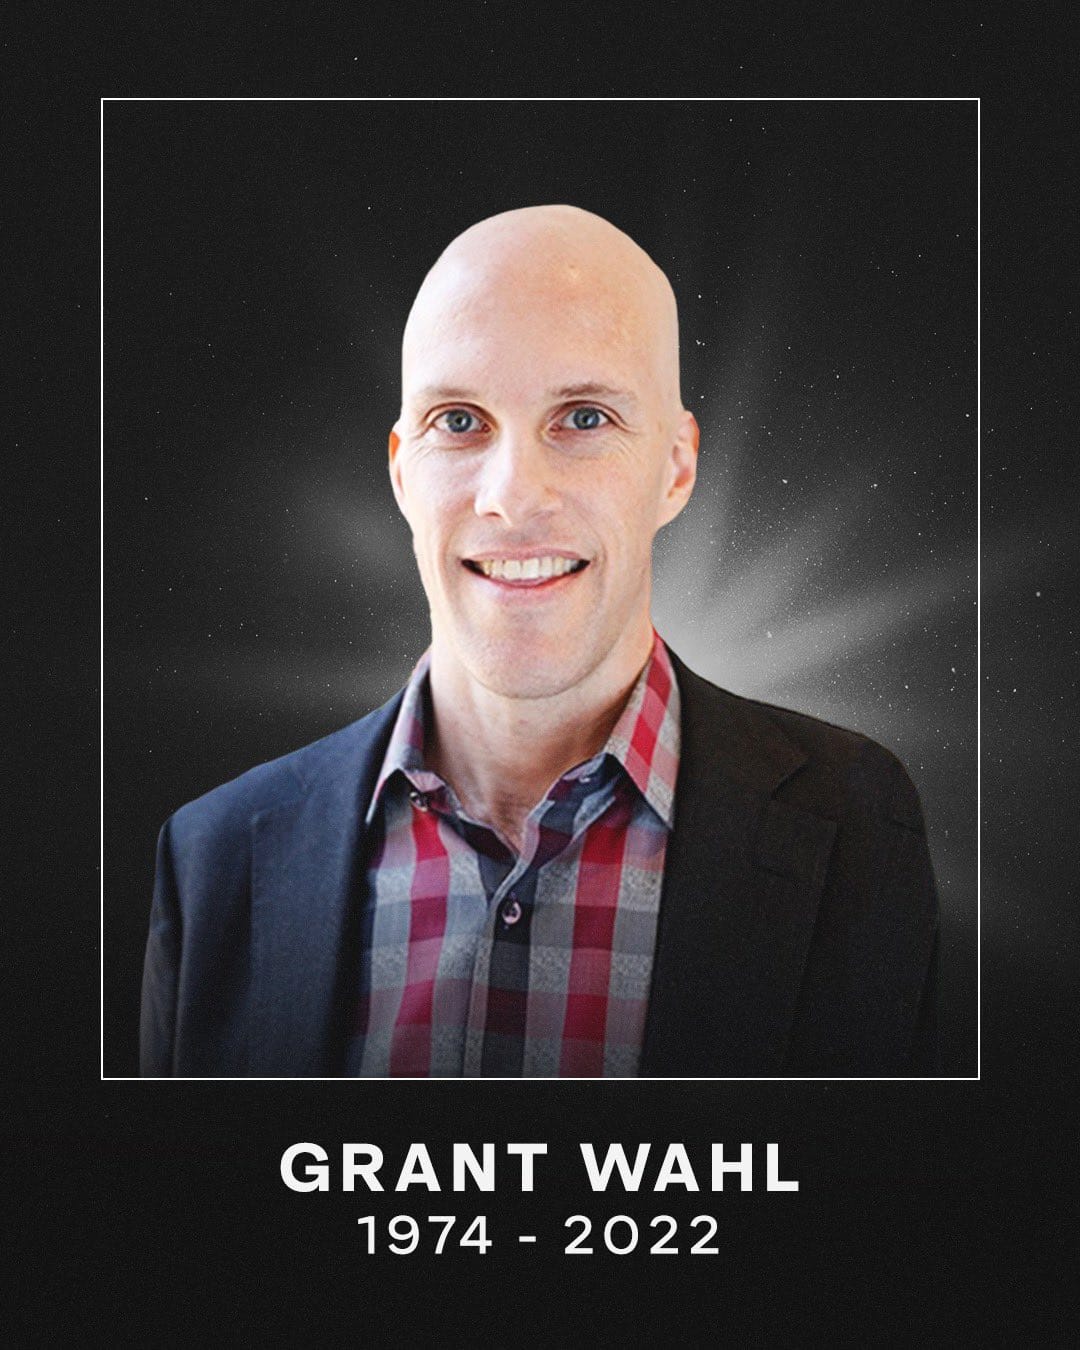 Grant Wahl died